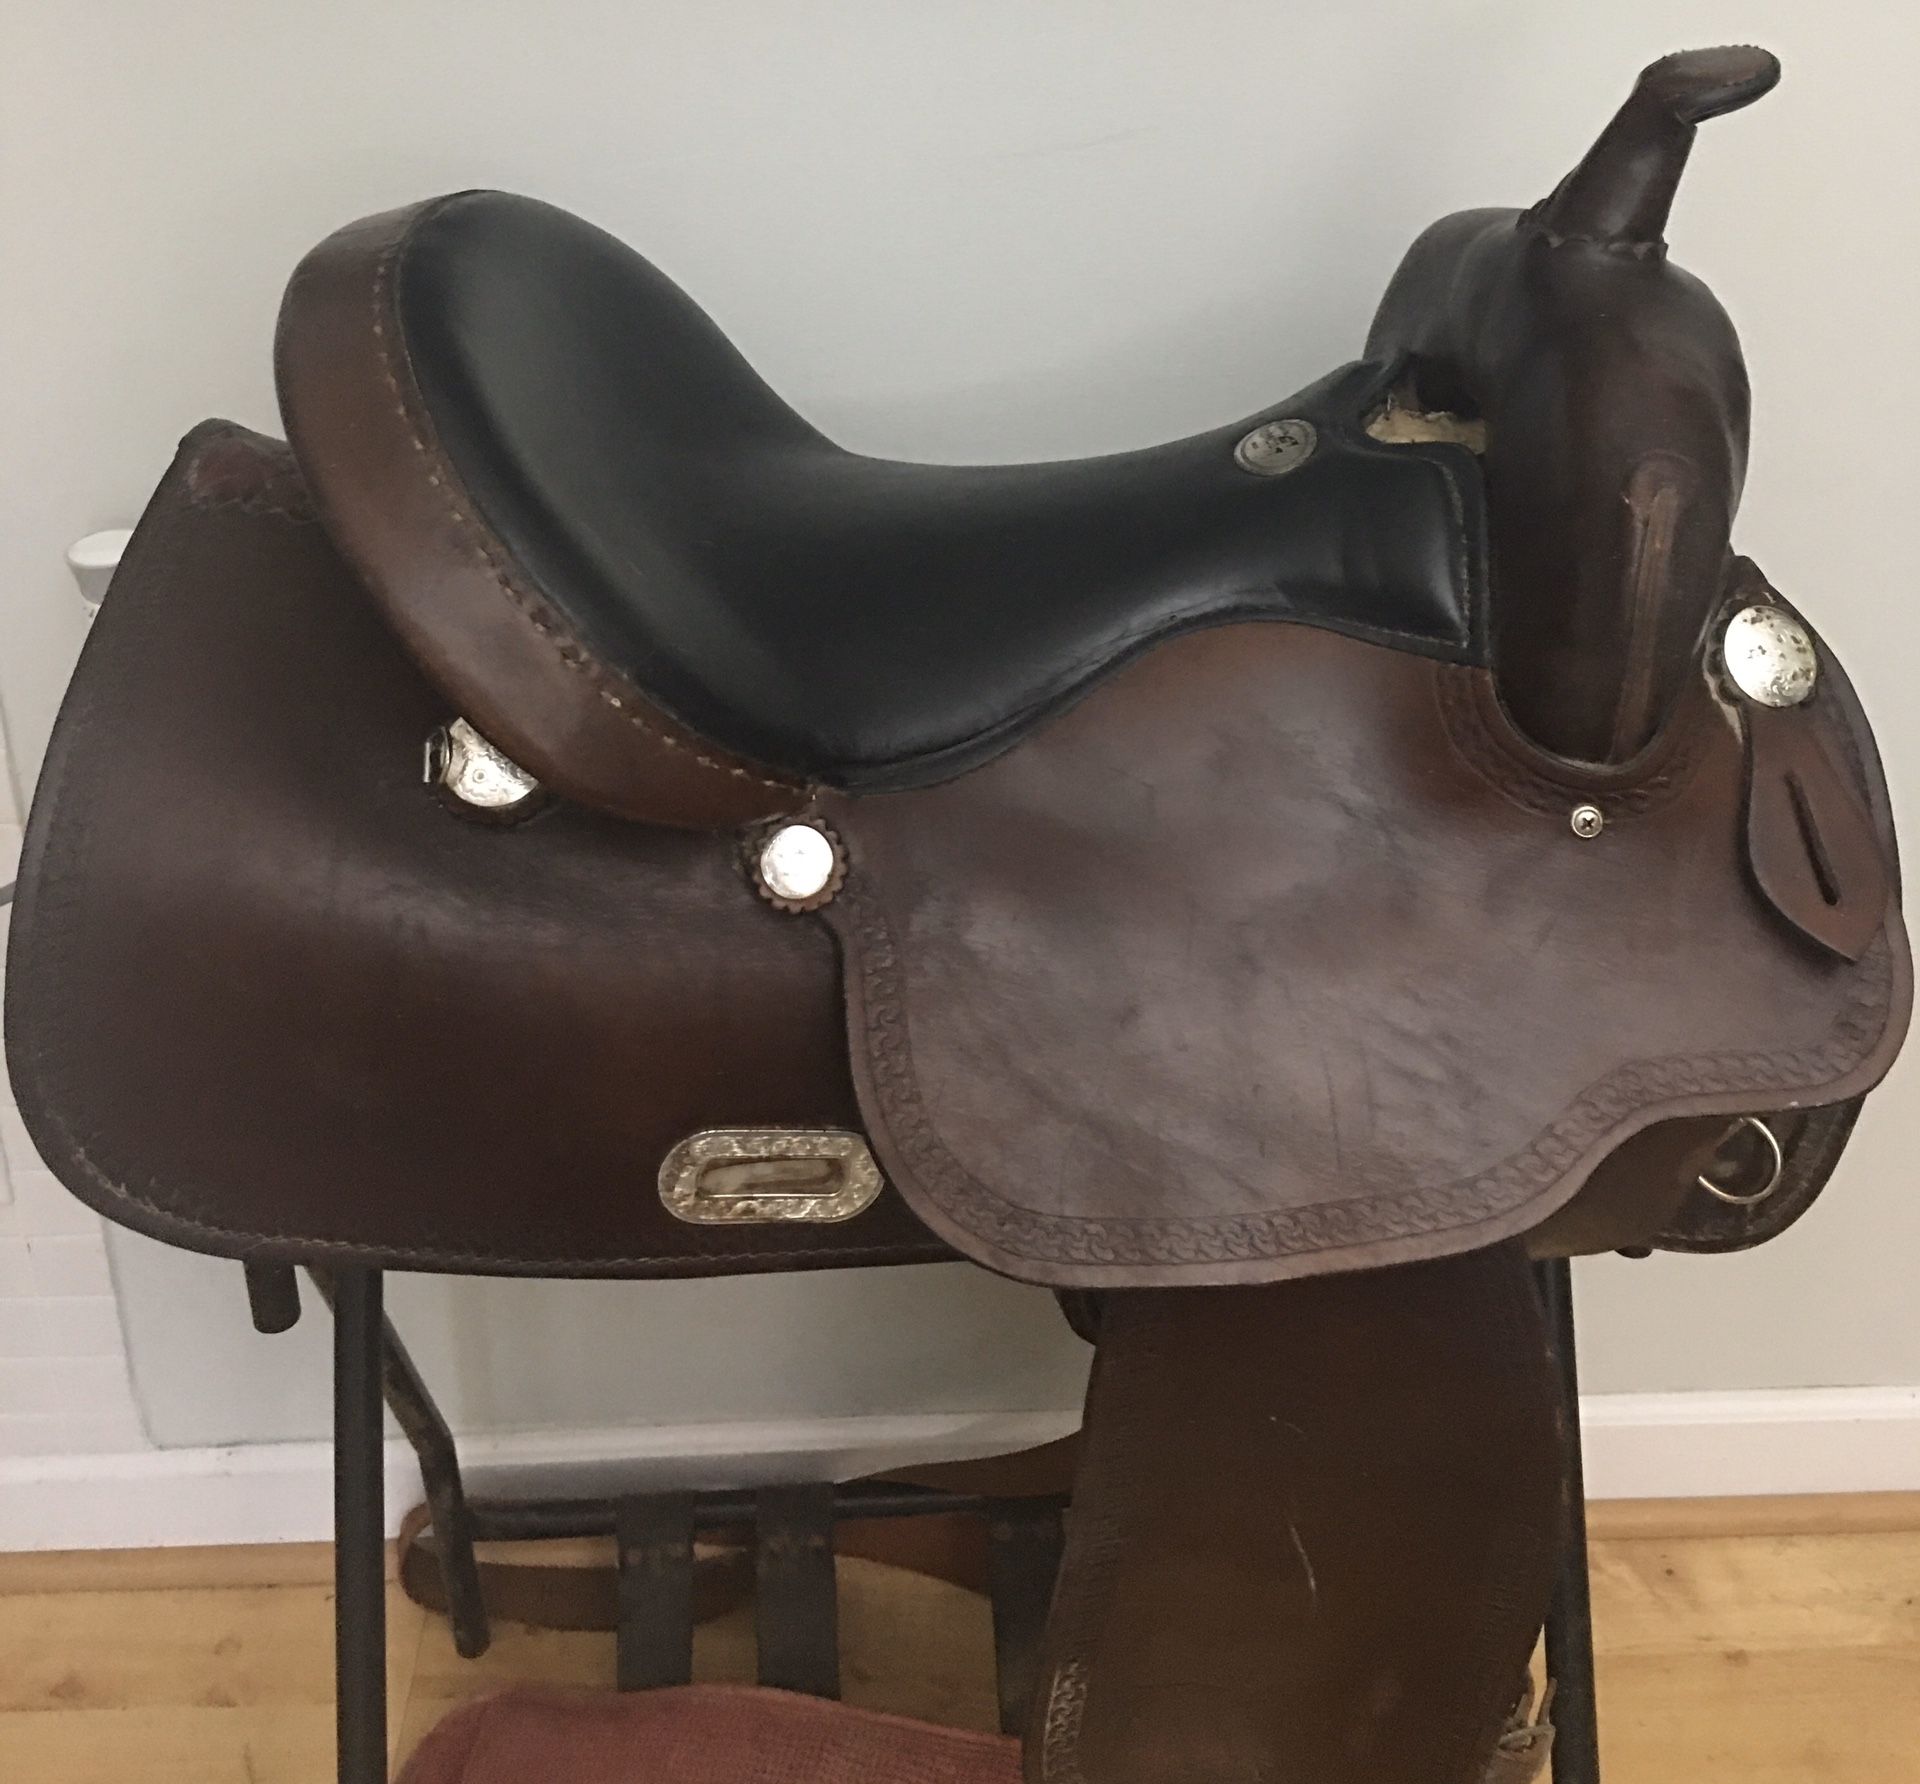 Simco 16-17” Flextree trail saddle